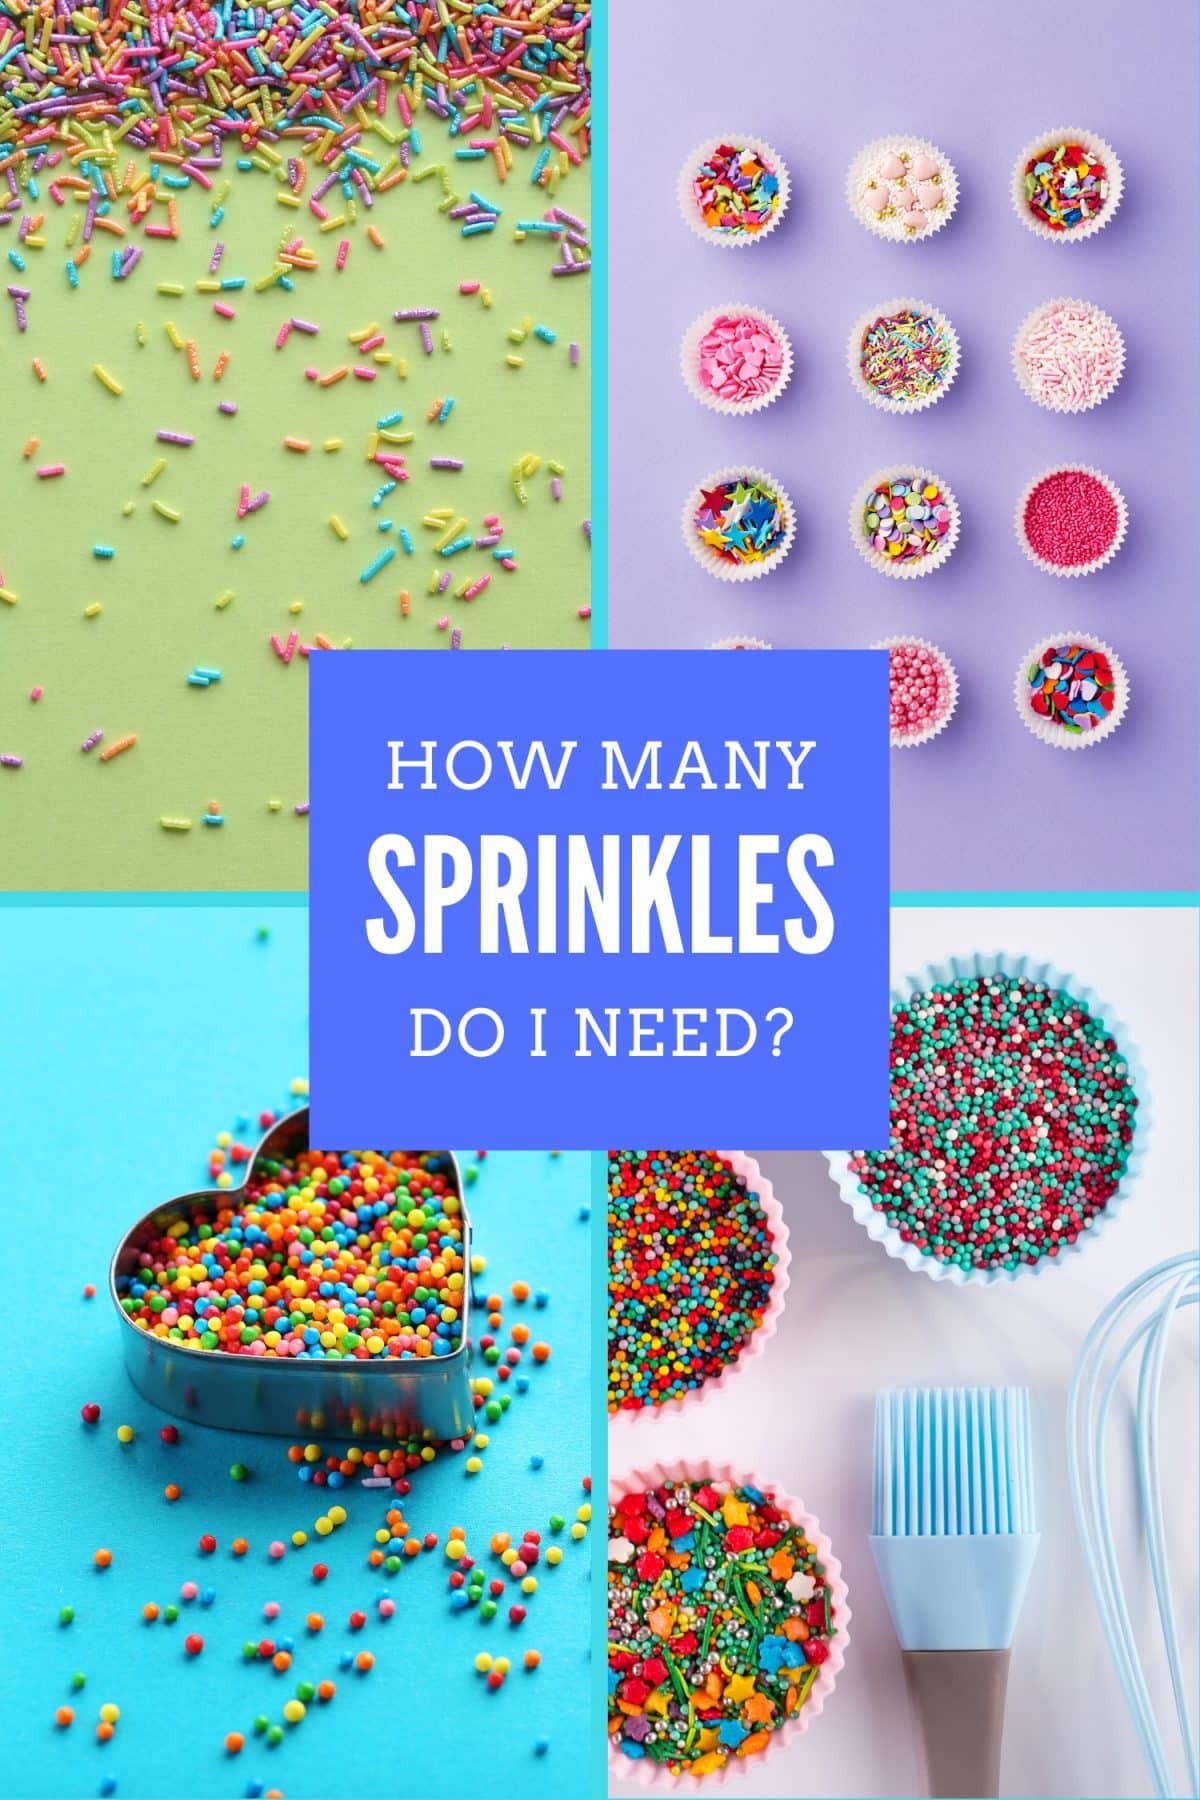 How Many Sprinkles Do I Need?